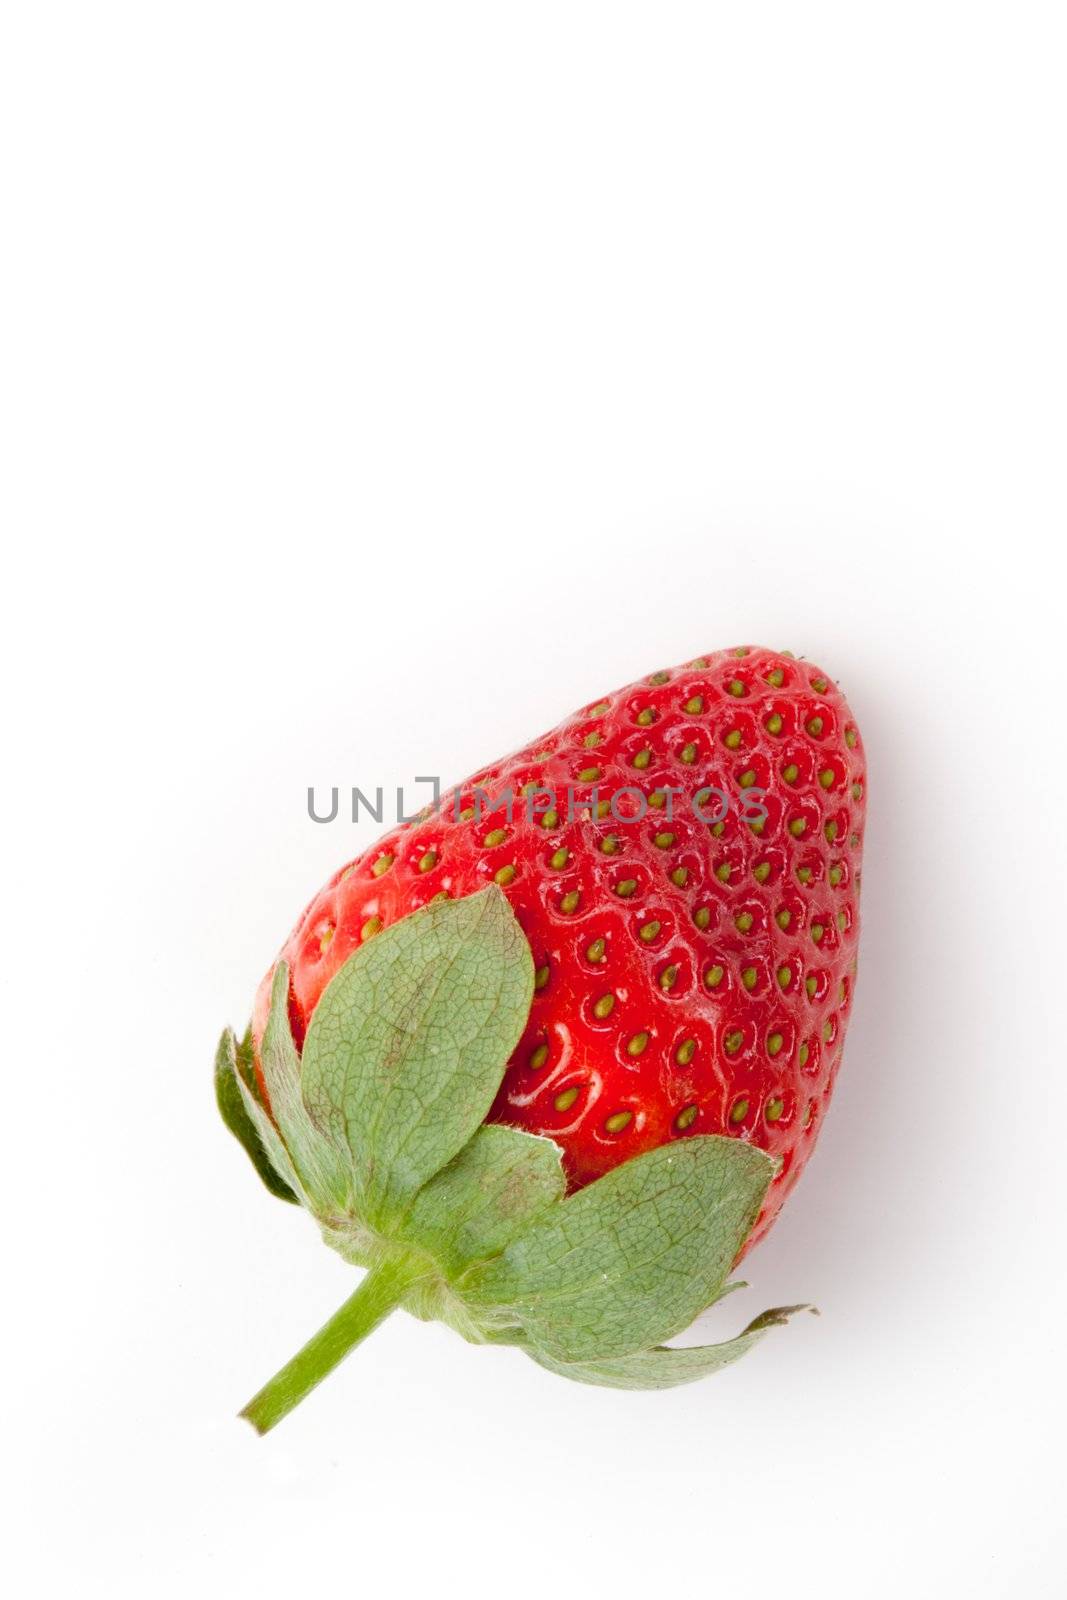 Strawberry by Wavebreakmedia